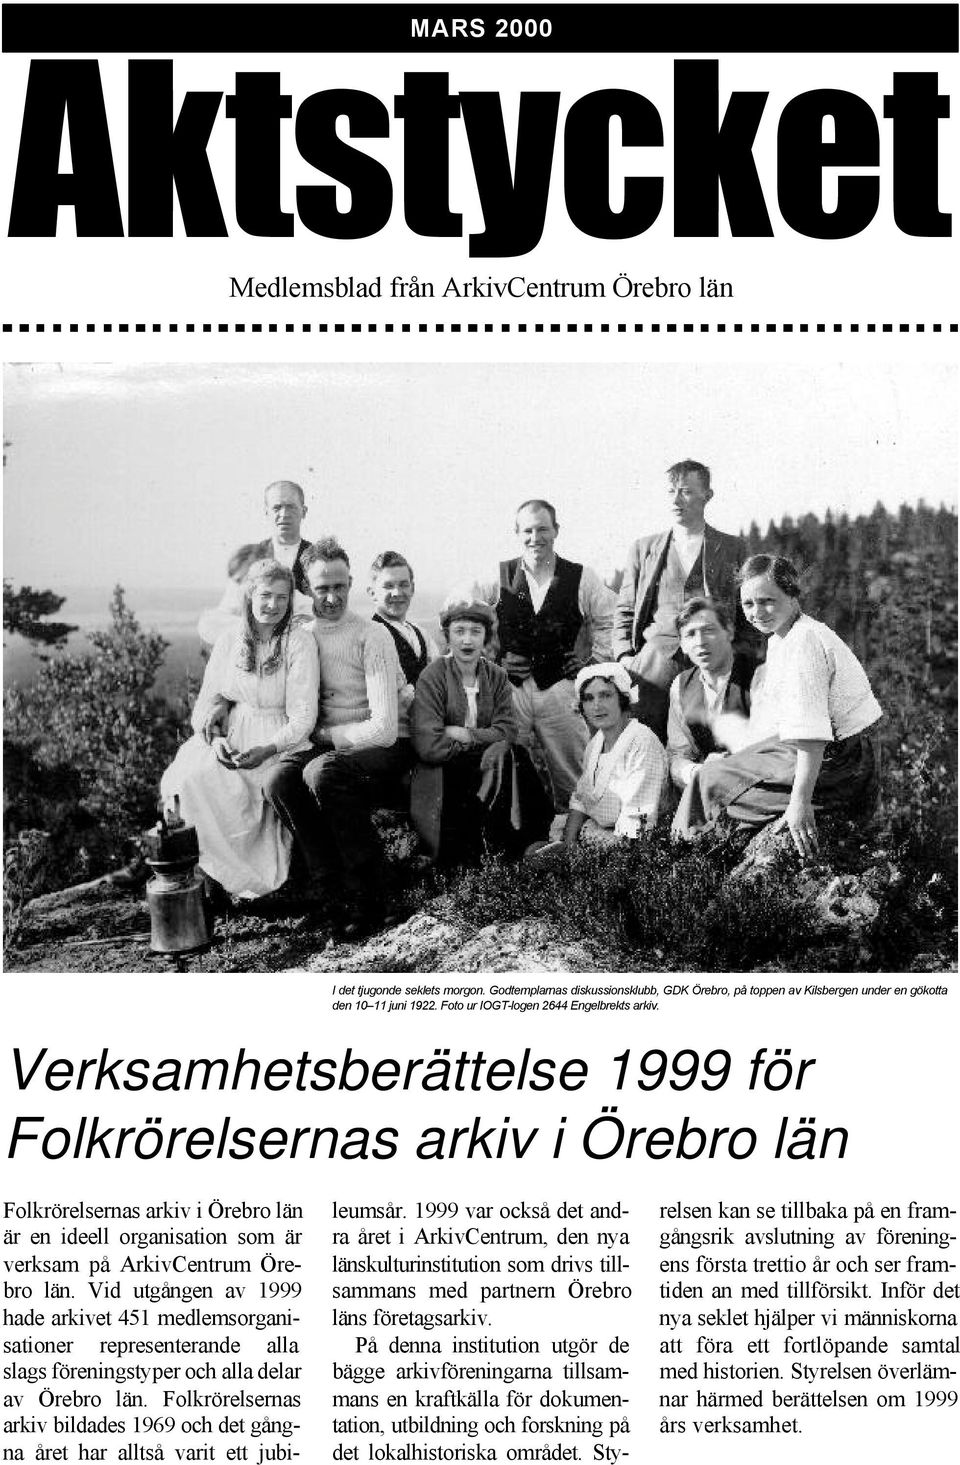 Verksamhetsberättelse 1999 för Folkrörelsernas arkiv i Örebro län Folkrörelsernas arkiv i Örebro län är en ideell organisation som är verksam på ArkivCentrum Örebro län.